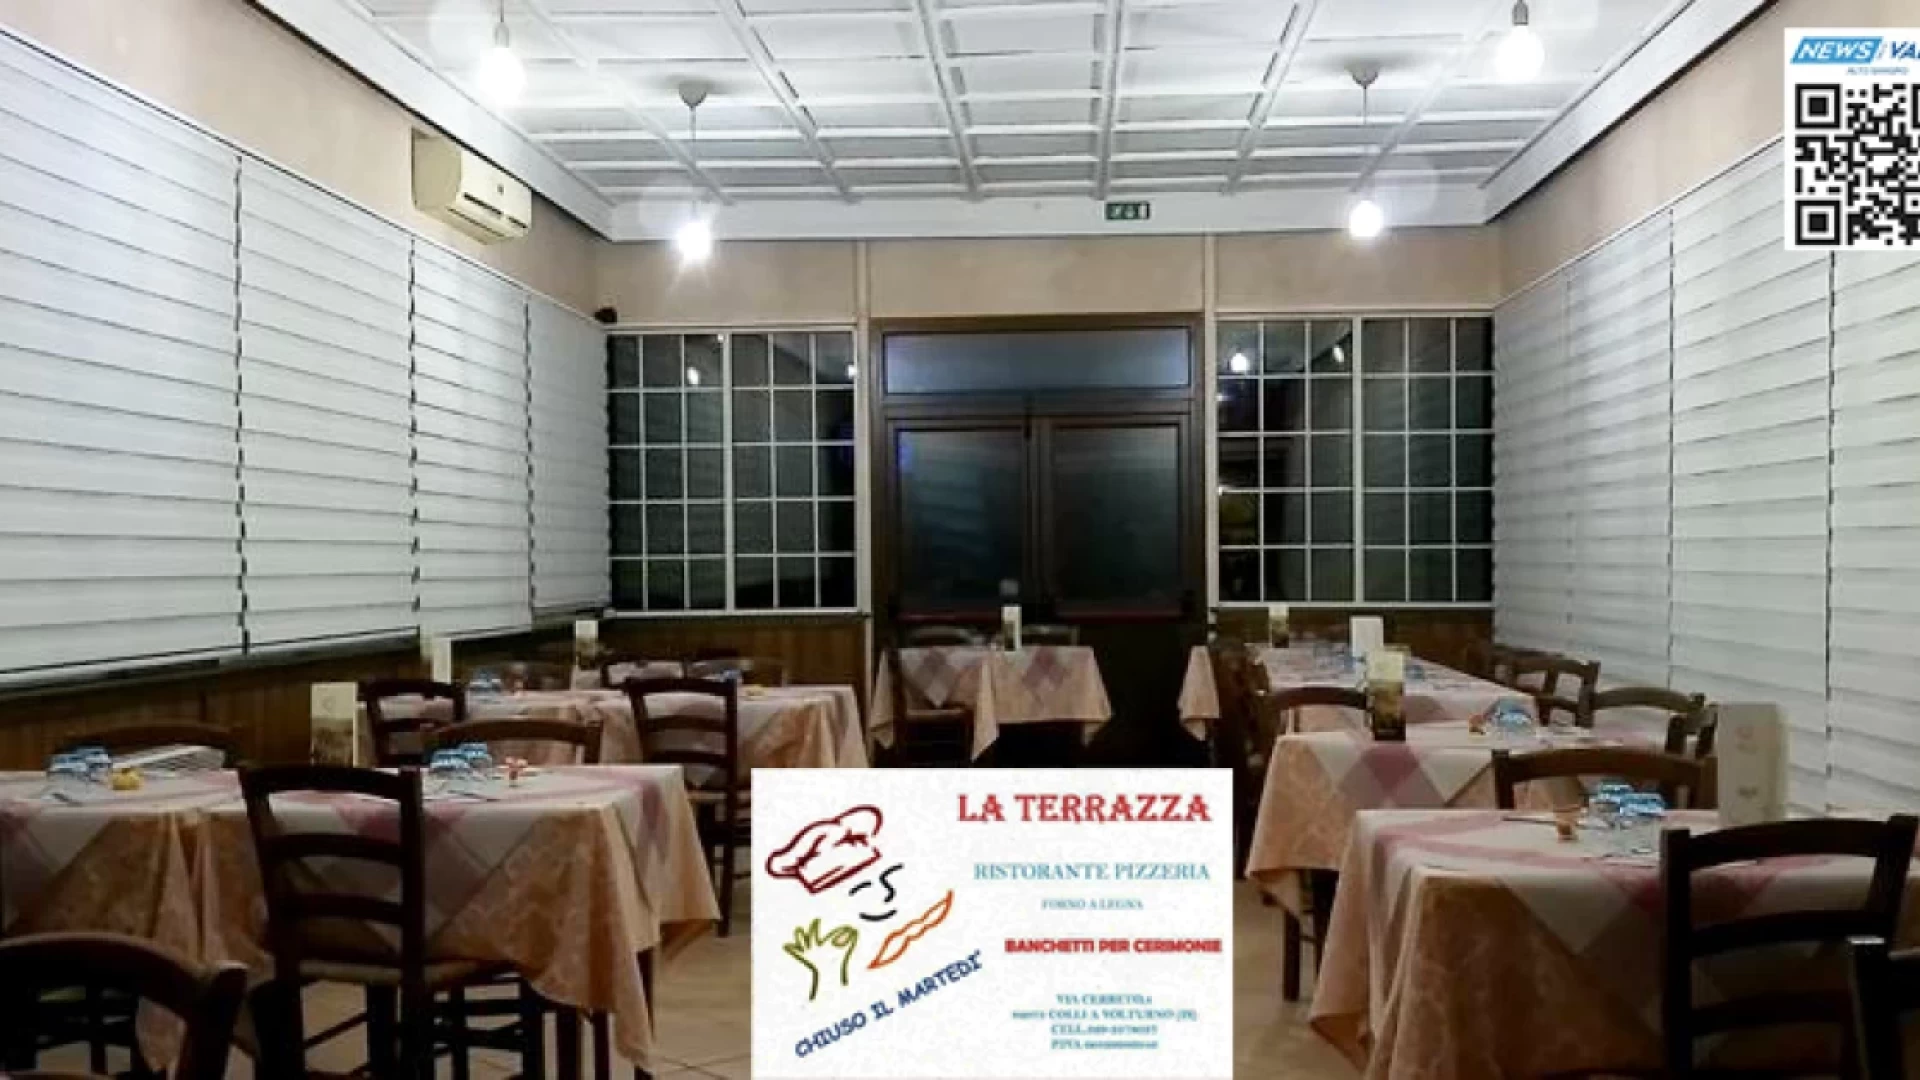 Colli a Volturno: il Ristorante Pizzeria “La Terrazza” premiato da Saporiamo Italia tra i migliori ristoranti del territorio nazionale.